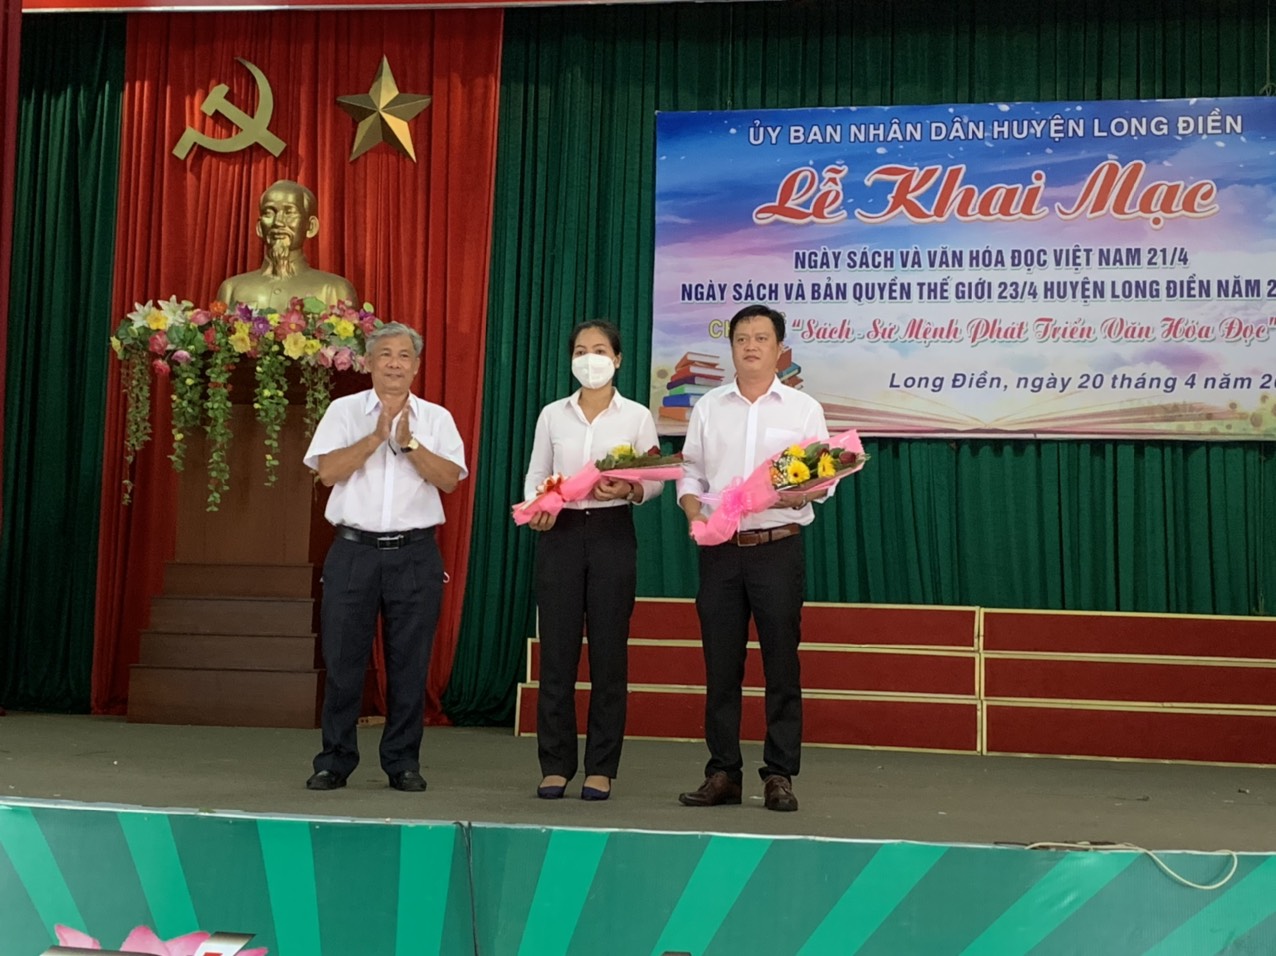 Ông Vương  Quốc Thịnh, Phó Trưởng phòng Văn hóa, Thông tin huyện Long Điền (bìa trái) tặng hoa cho Ban giám khảo cuộc thi Vẽ tranh theo sách với chủ đề “Vì một hành tinh xanh”. 